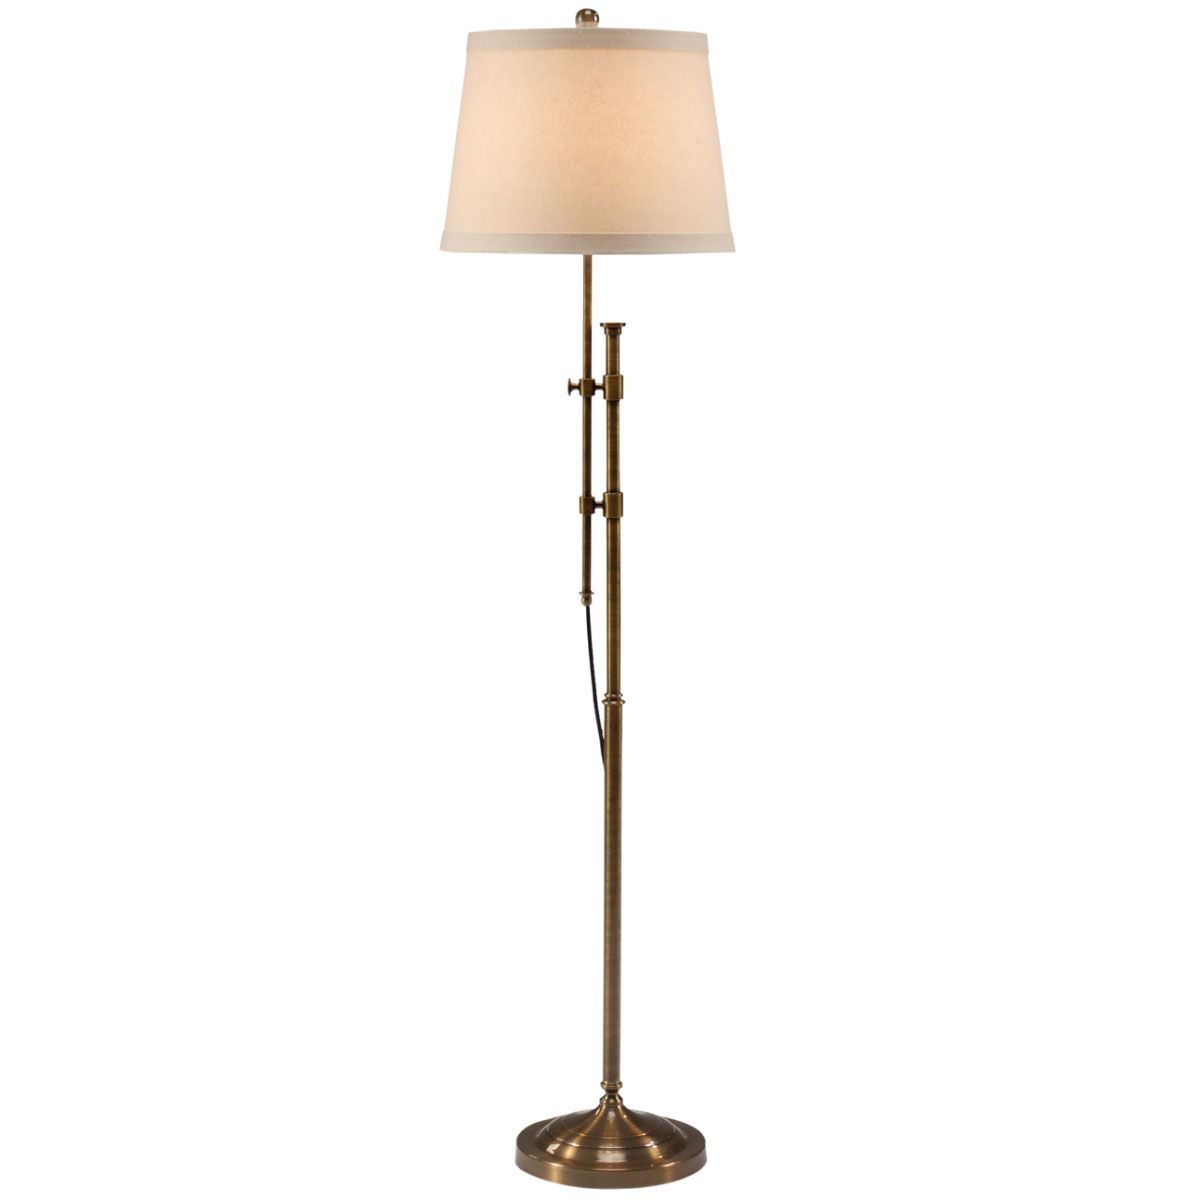 Adjustable Floor Lamp With Regard To Adjustable Height Floor Lamps (View 5 of 15)